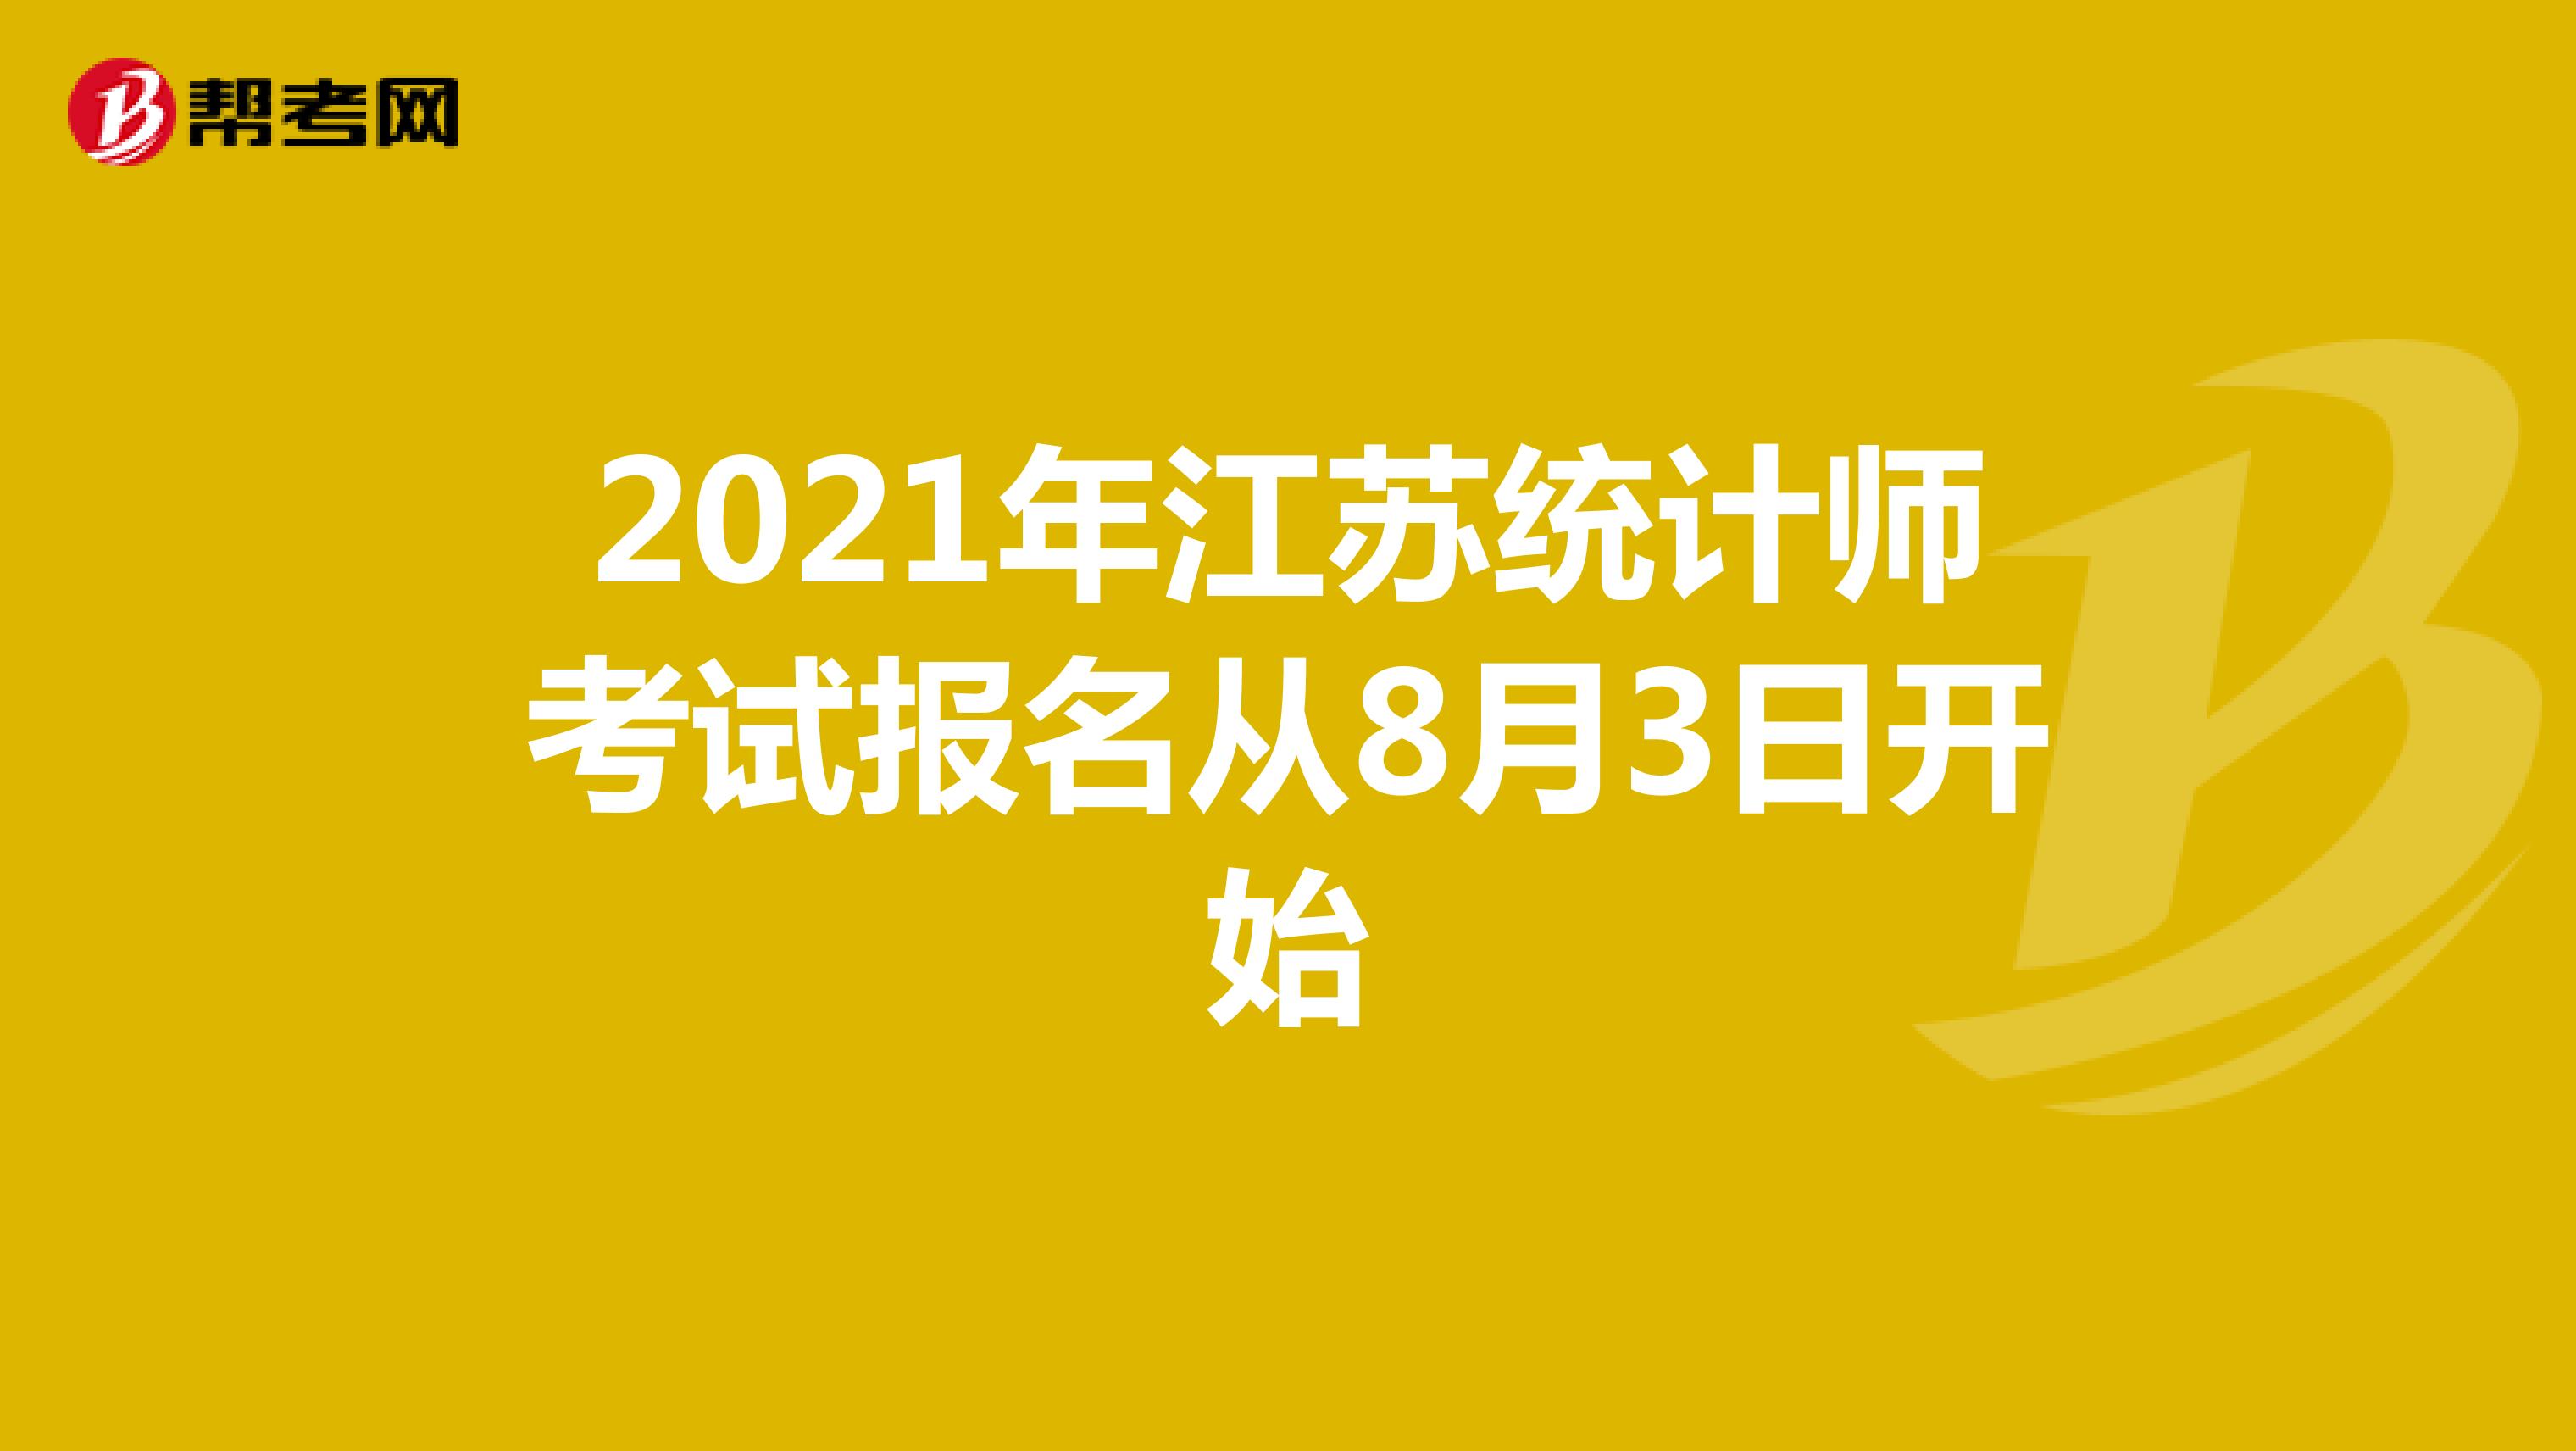 2021年江苏统计师考试报名从8月3日开始